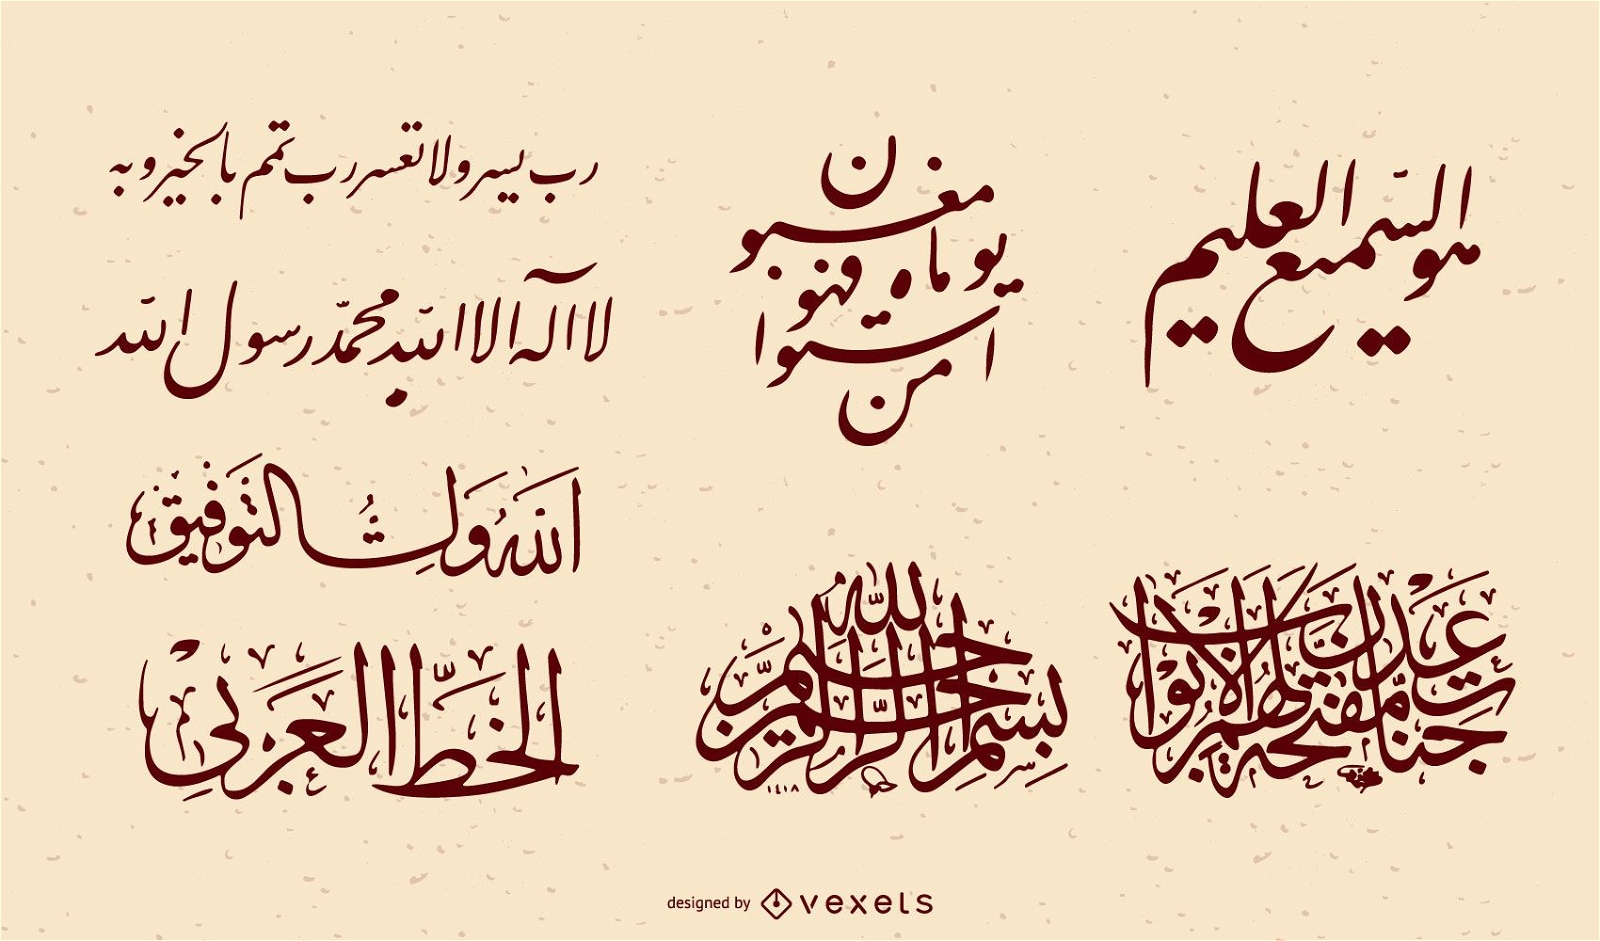 Conjunto de vetores de caligrafia persa iraniana